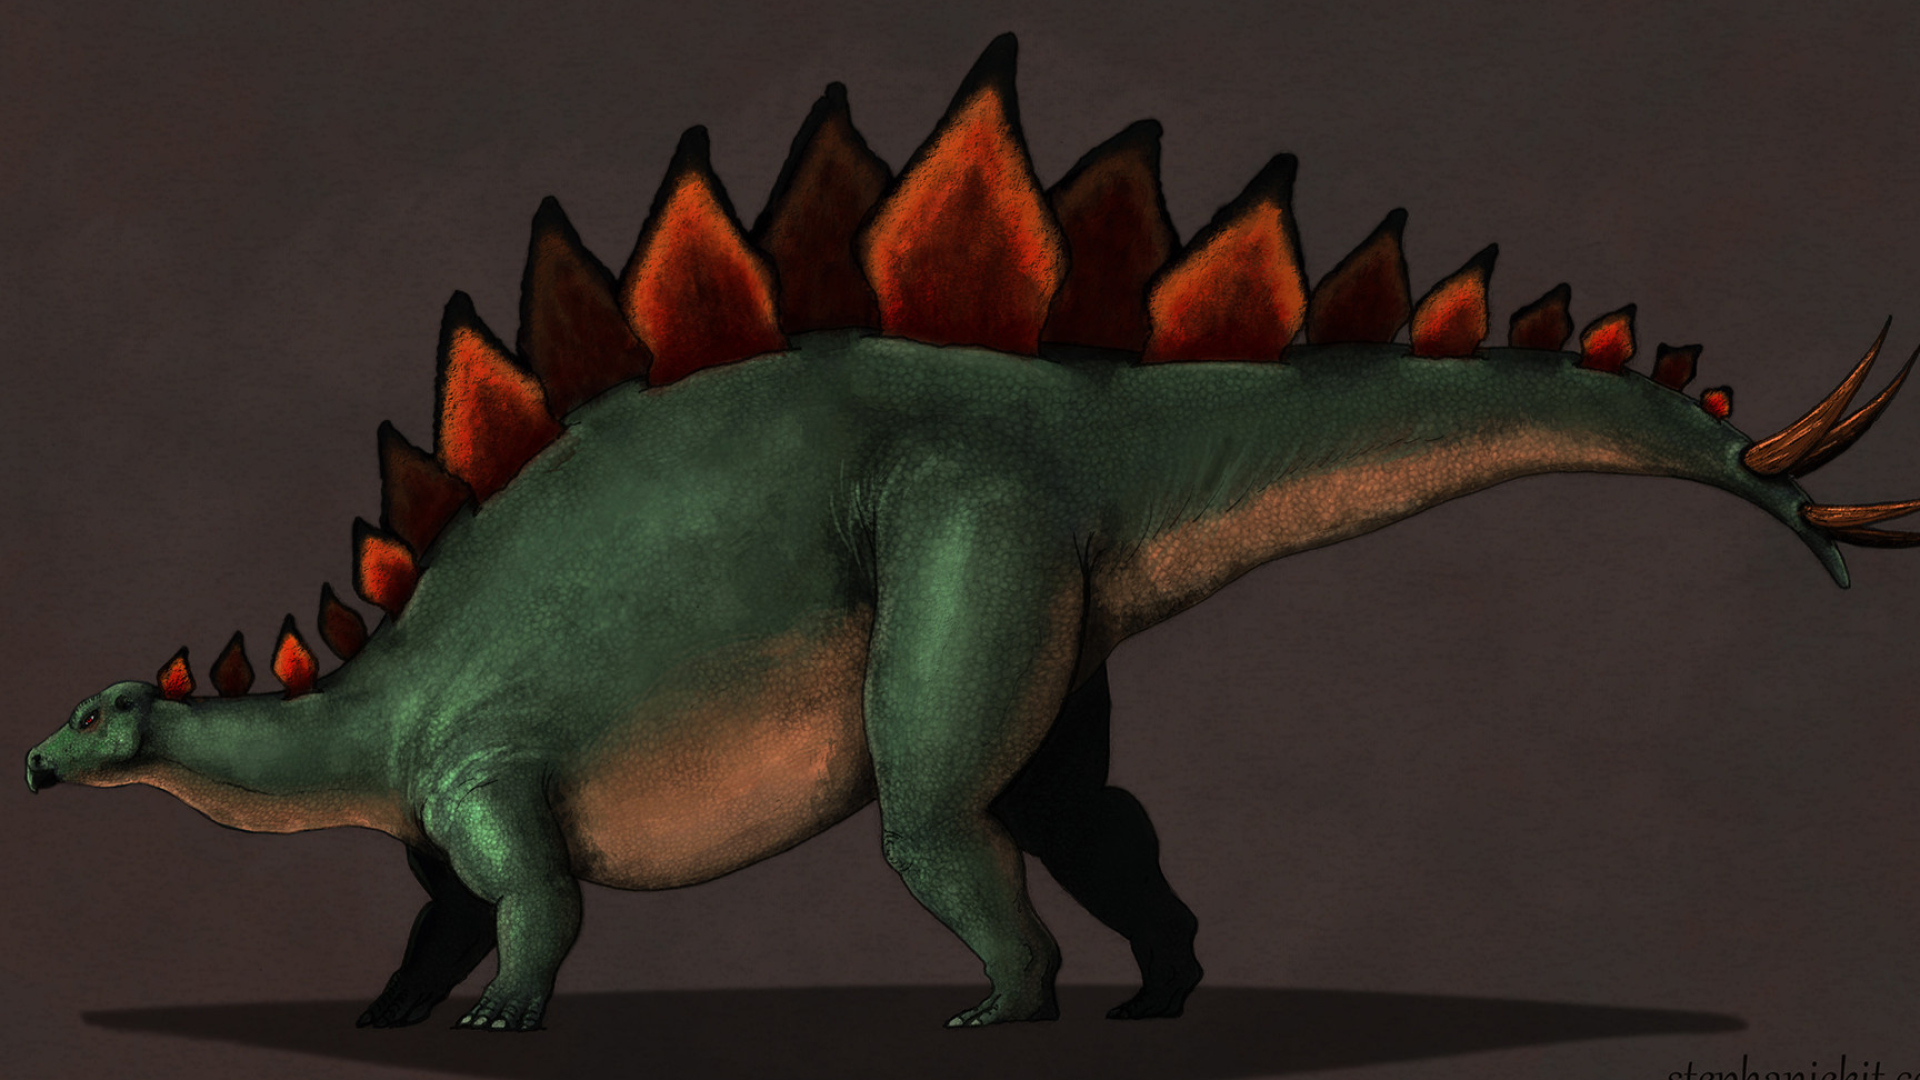 Artstation stegosaurus, Dinosaur artwork, Digital illustration, Prehistoric theme, 1920x1080 Full HD Desktop